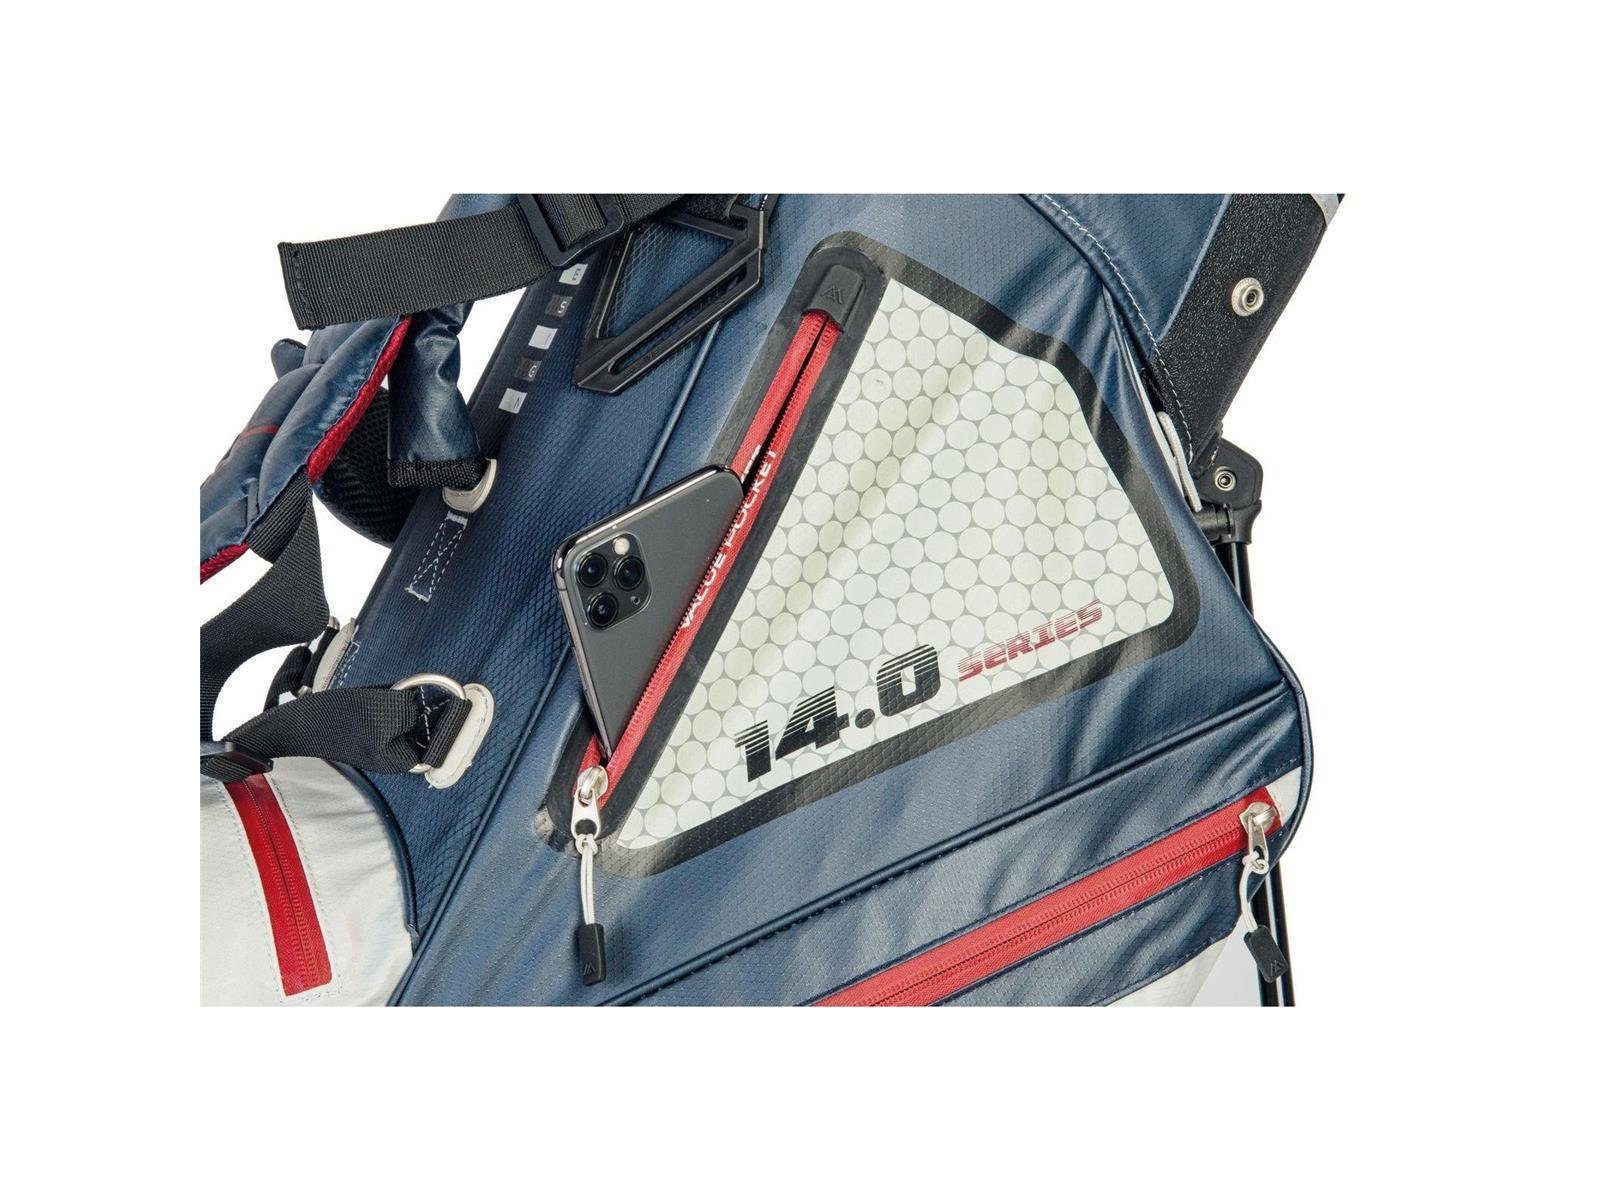 Divider I Golf DRI Ständerbag Golfreisetasche Max LITE Tour, Wasserabweisen MAX Hybrid Big BIG 14-fach Silber